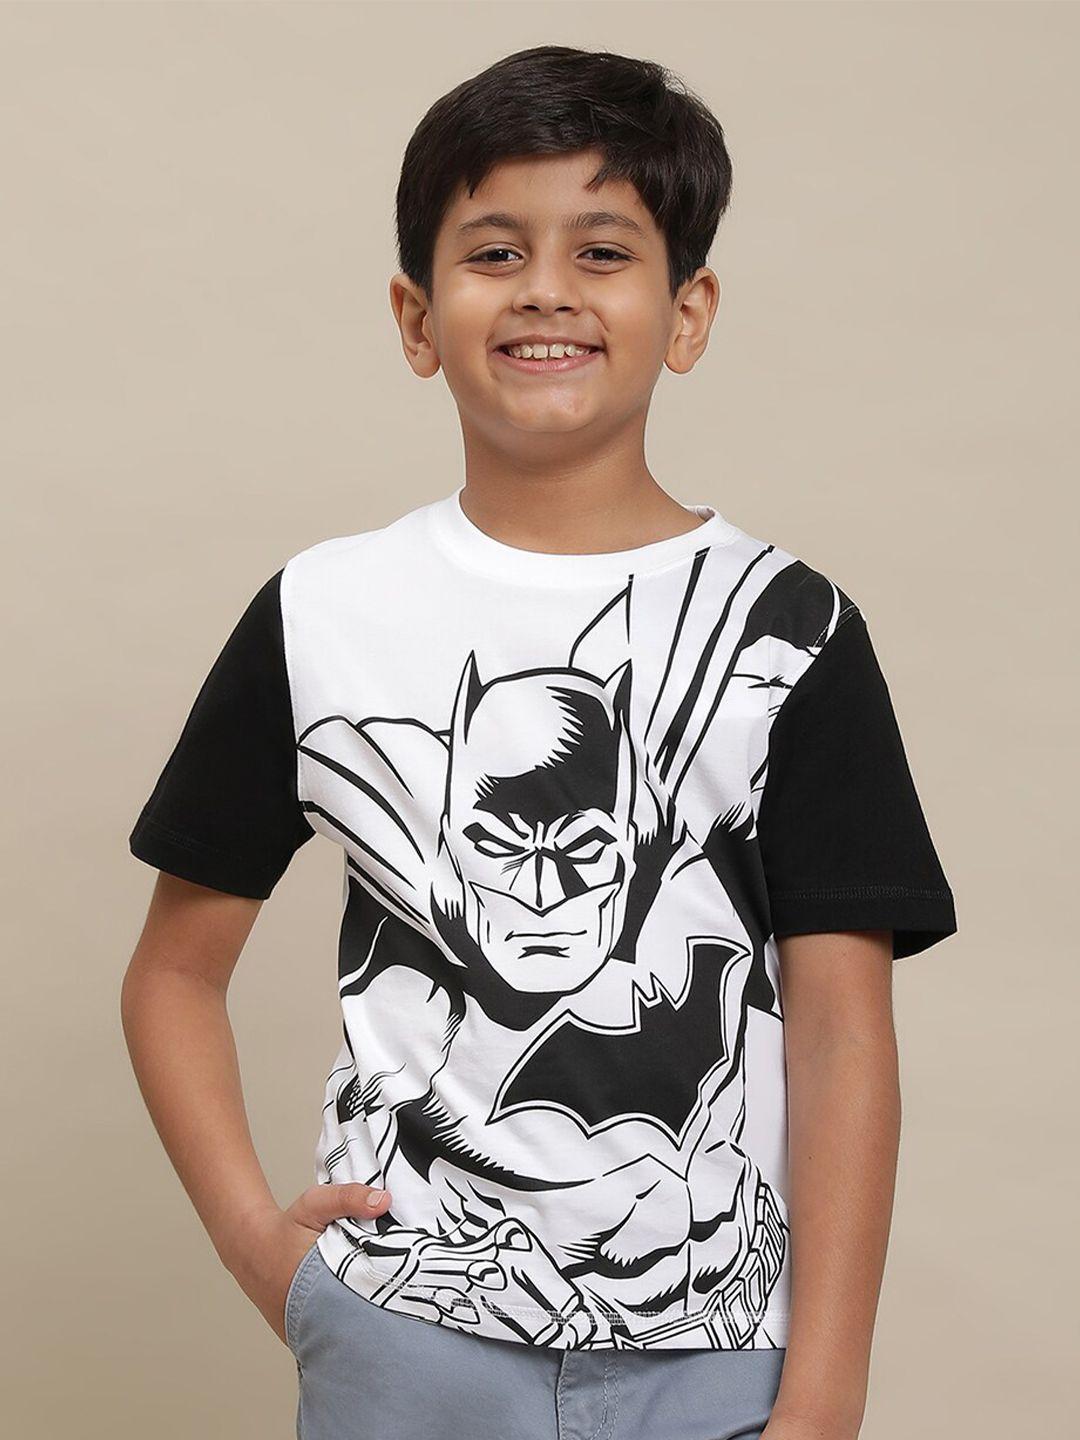 kids ville boys batman printed pure cottontshirt